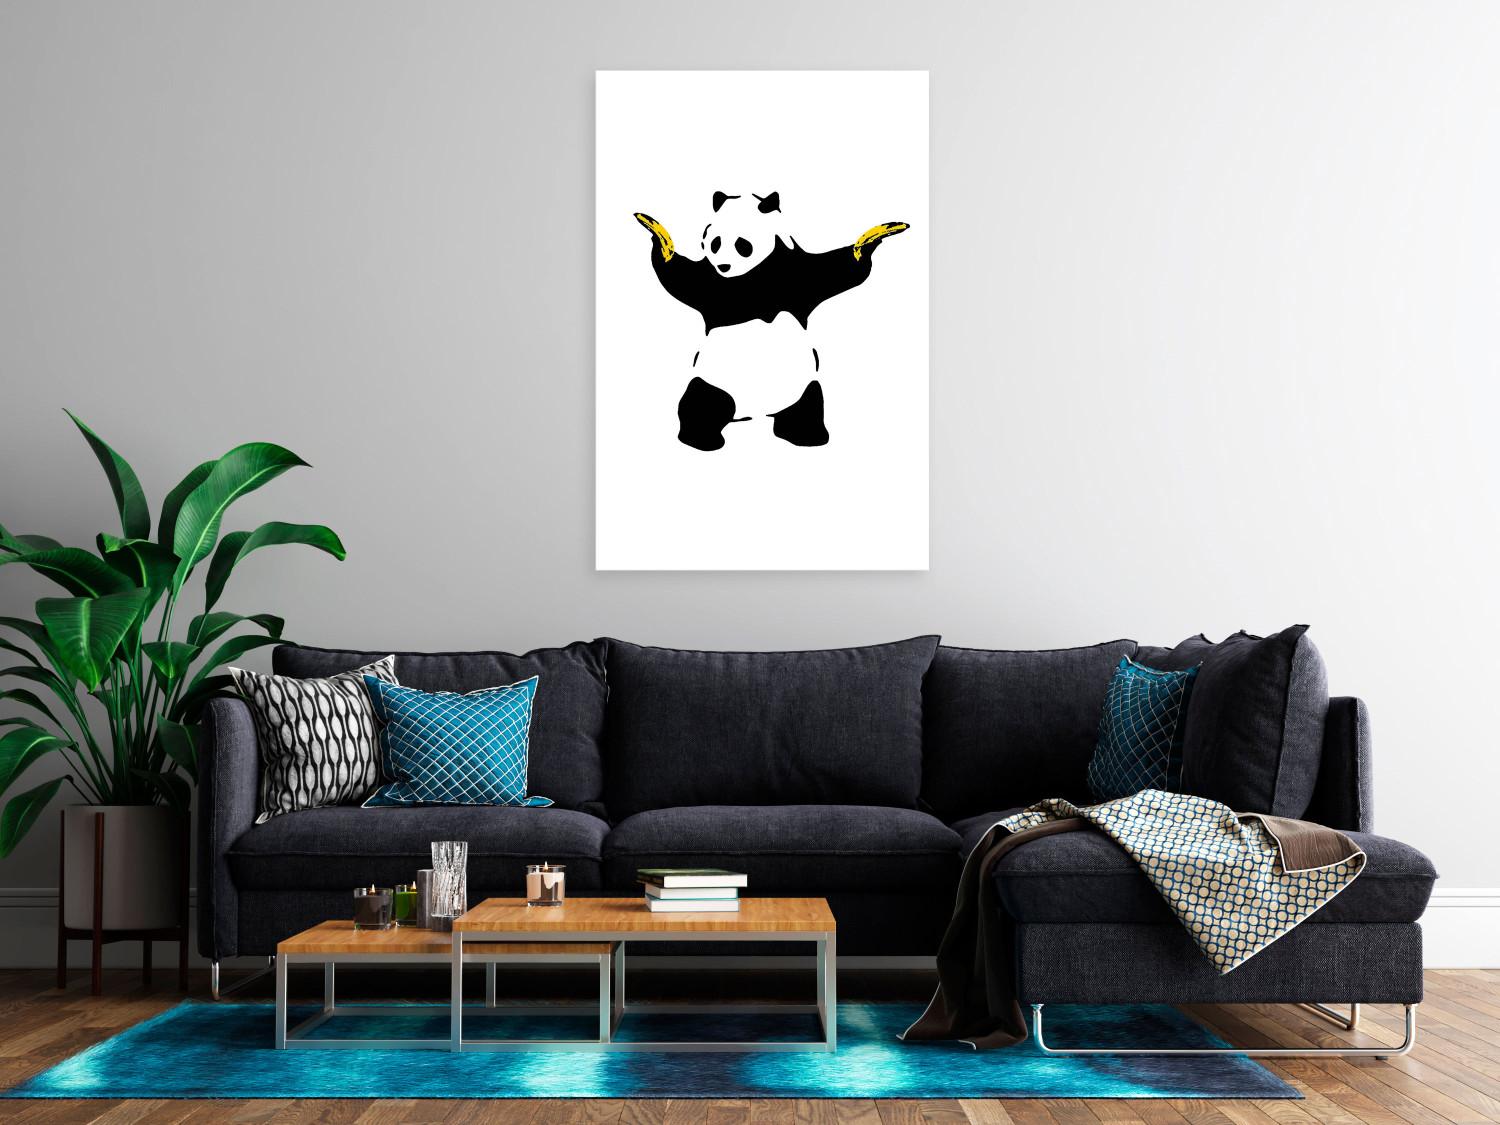 Cuadro Panda with guns (1 pieza) vertical - animal exótico con plátanos